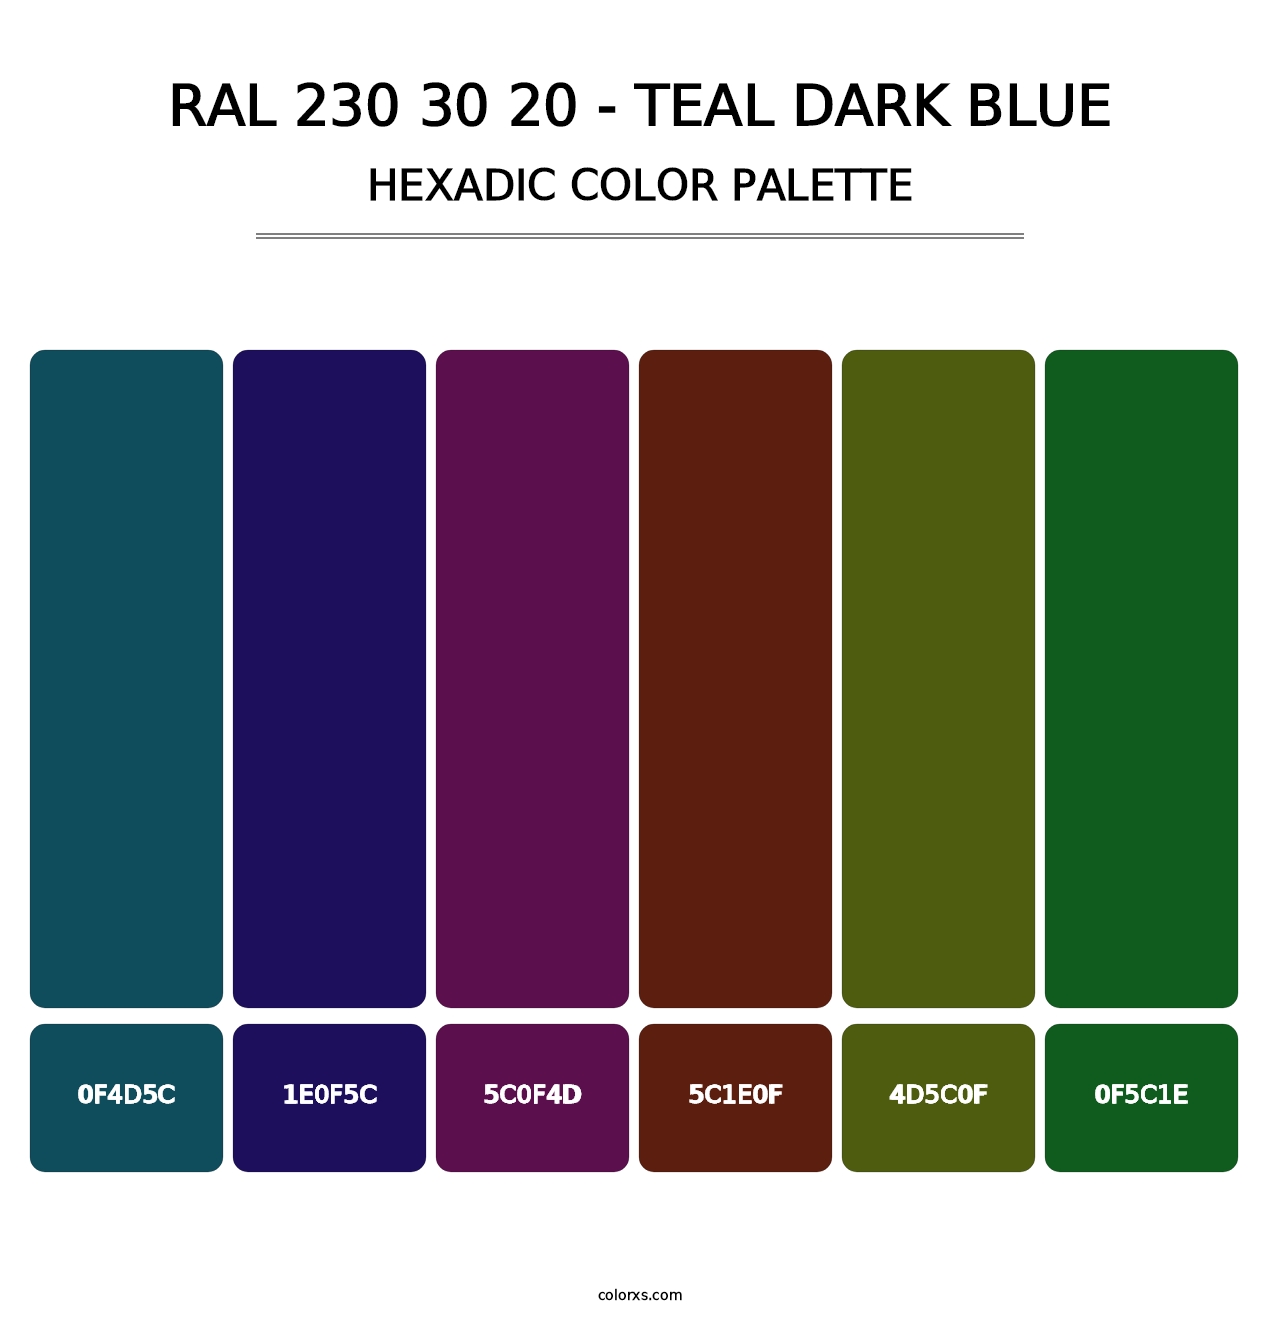 RAL 230 30 20 - Teal Dark Blue - Hexadic Color Palette